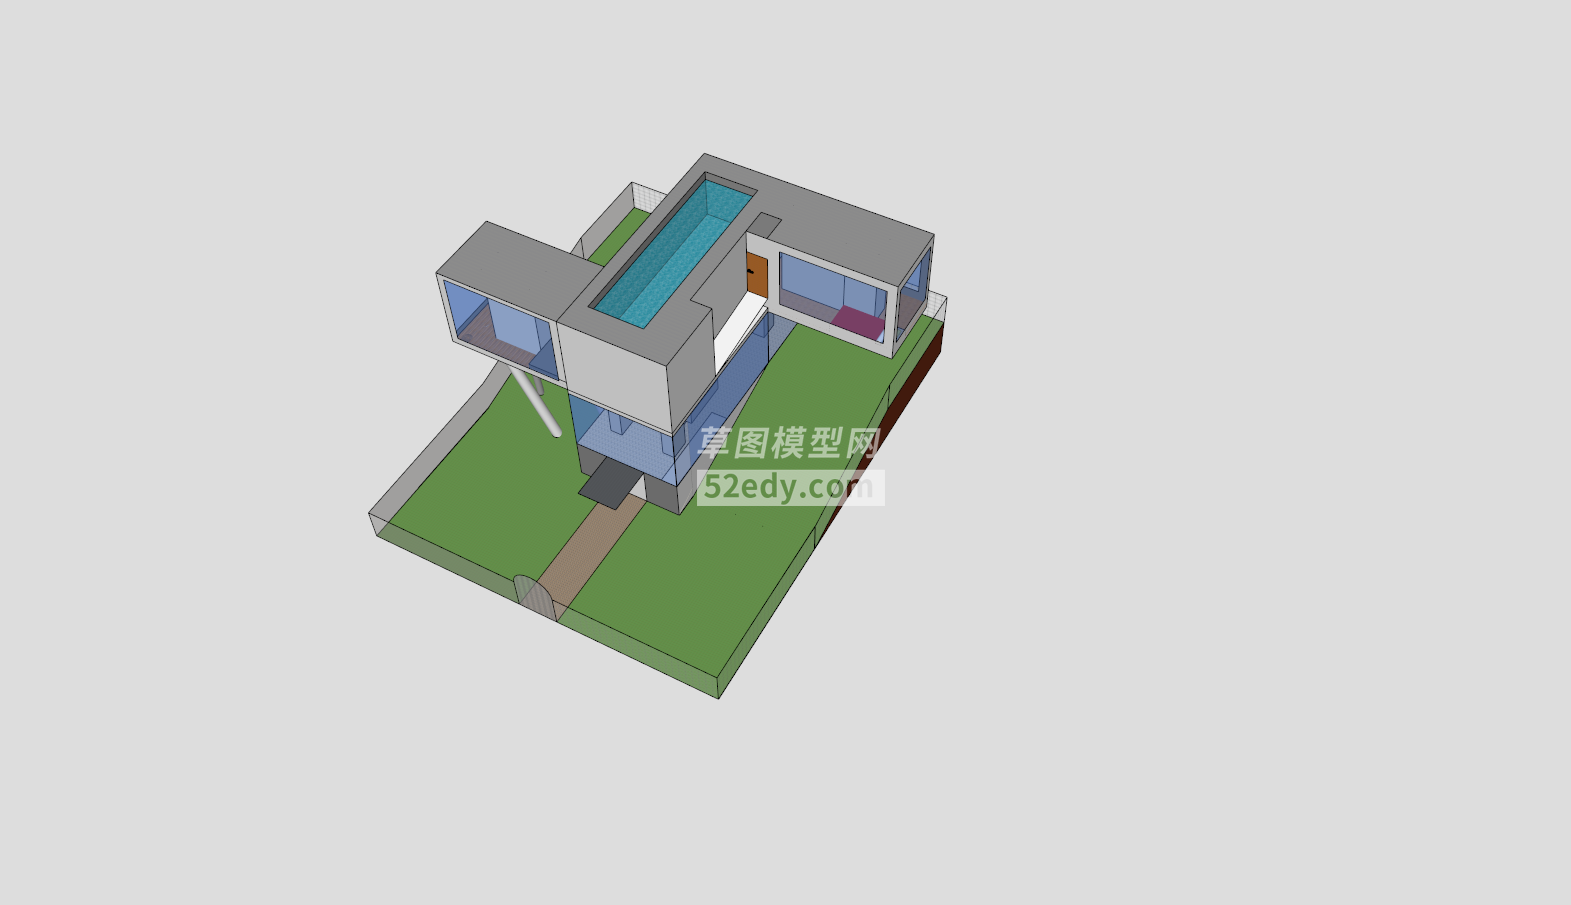 简易双层别墅设计SU模型QQ浏览器截图20190113142217(3)